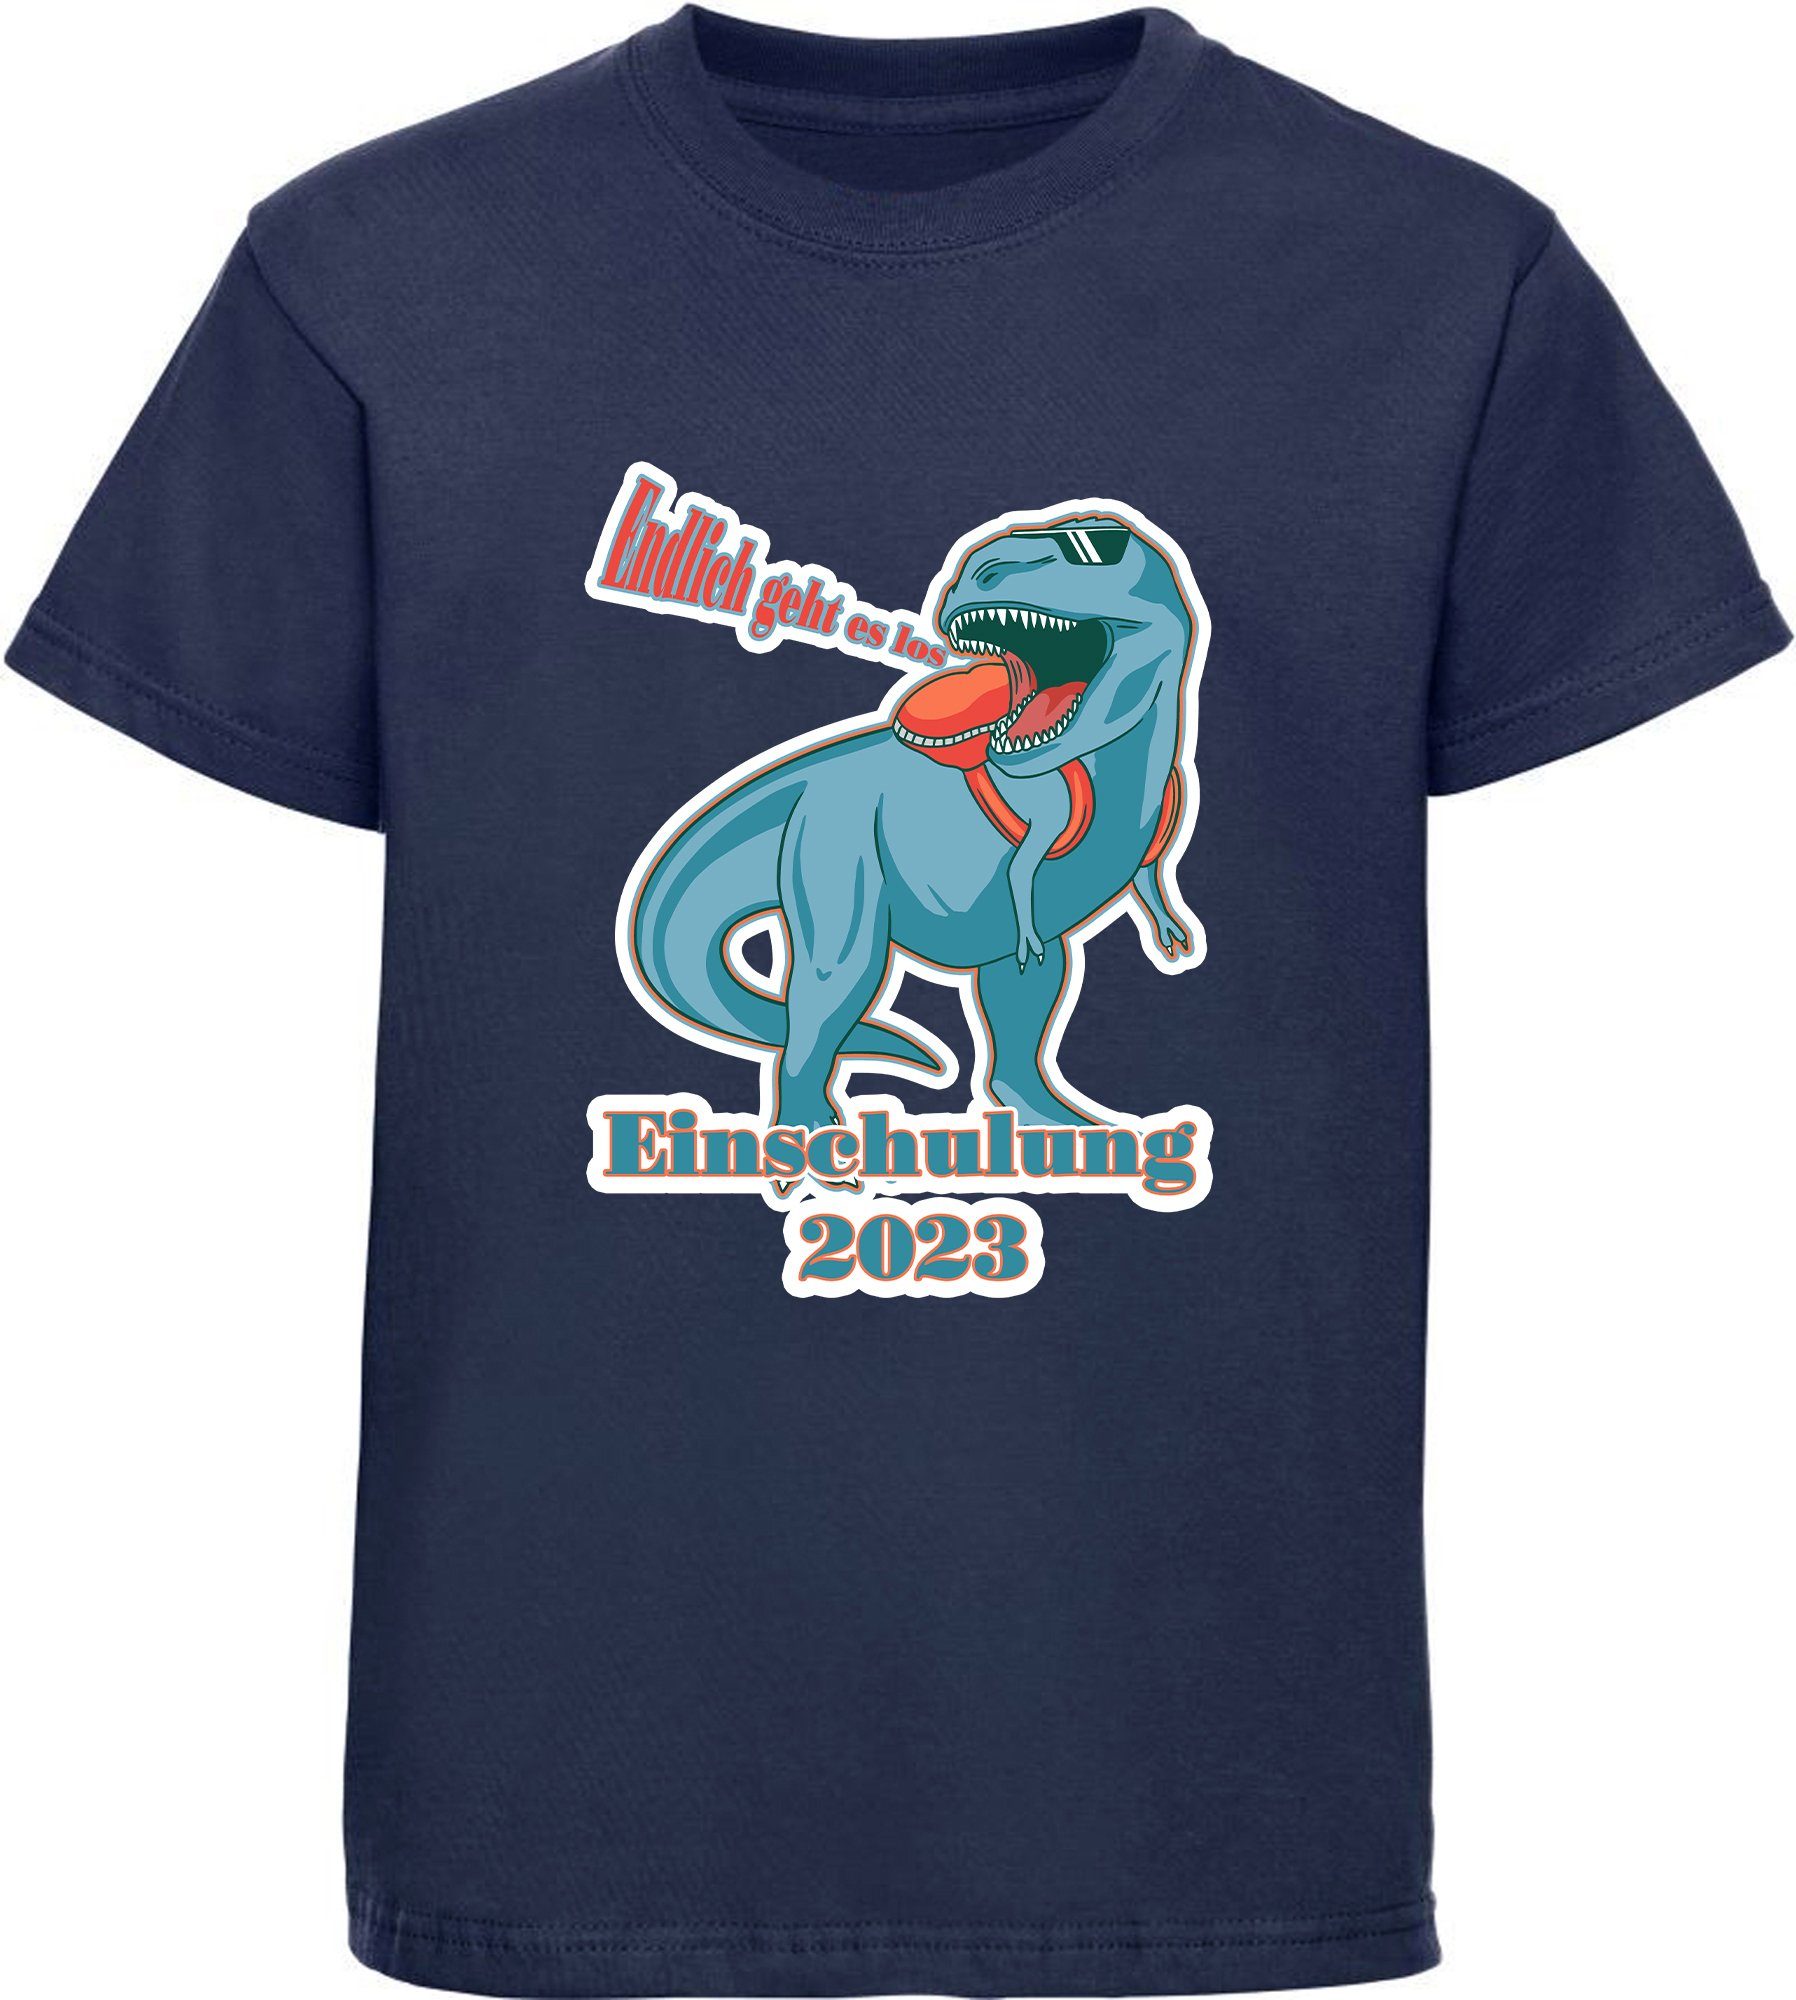 MyDesign24 Print-Shirt bedrucktes Kinder T-Shirt T-Rex - Endlich geht es los Baumwollshirt Einschulung 2023 Aufdruck, schwarz, weiß, rot, blau, i37 navy blau